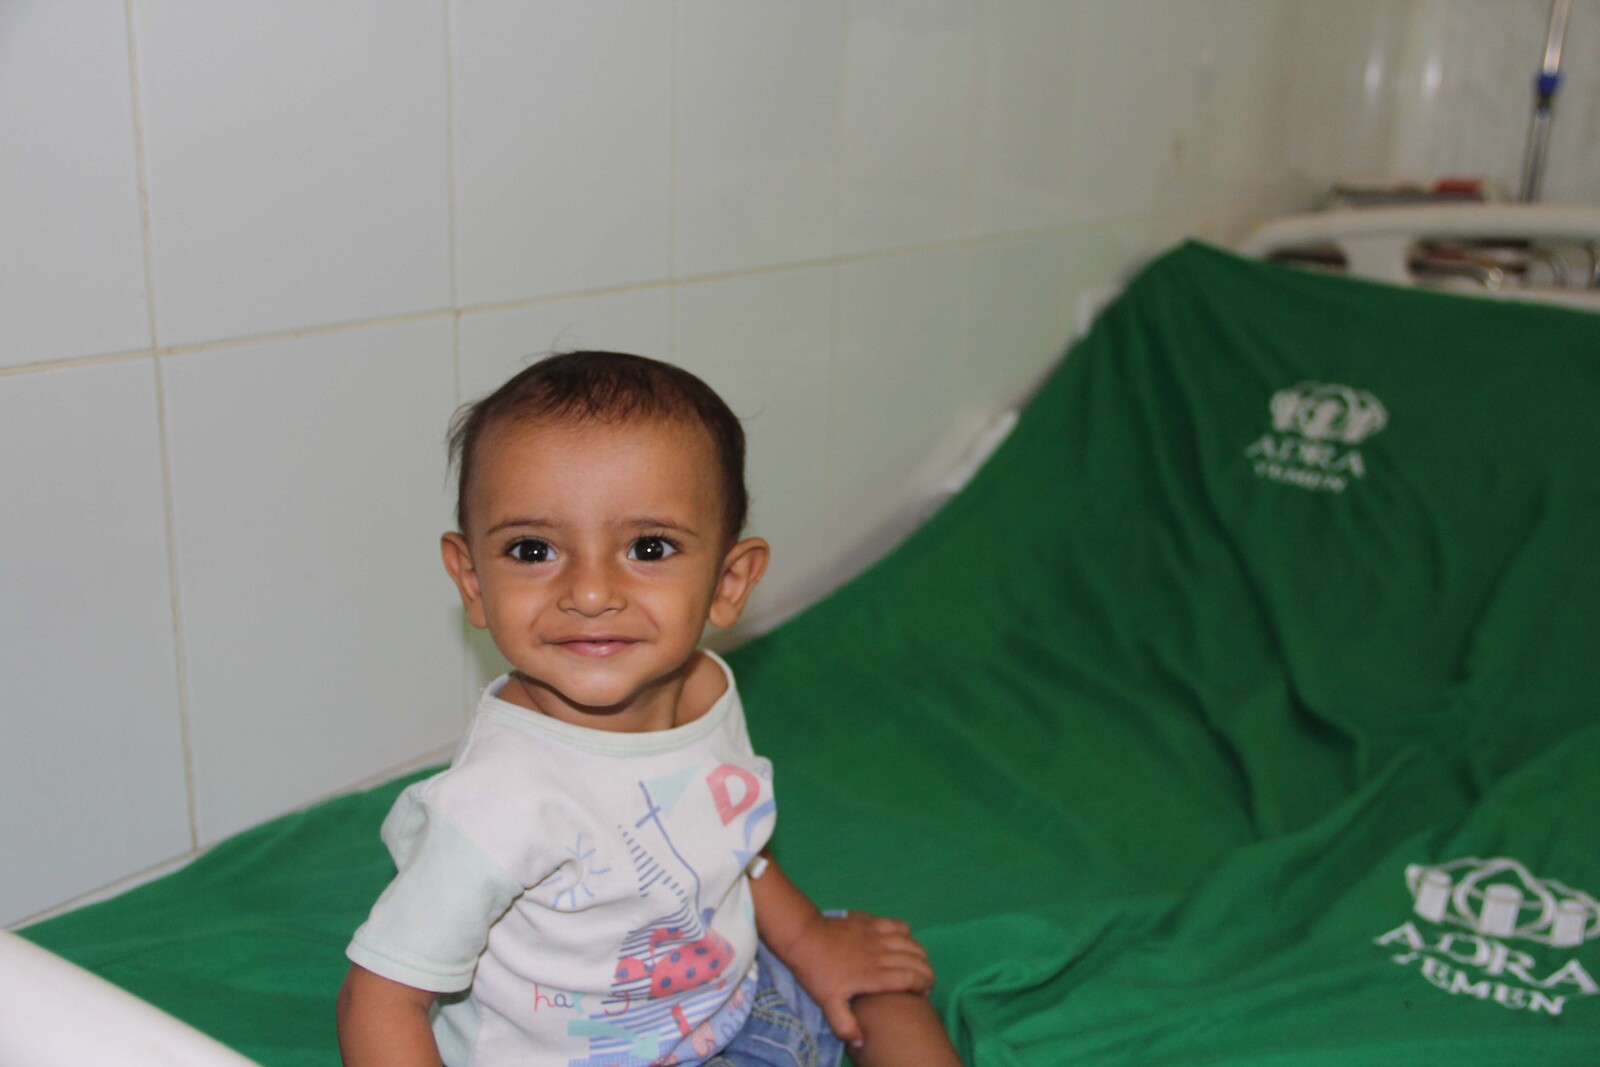 kleiner unterernährter Junge im Jemen sitzt auf einer grünen Decke mit dem Logo von ADRA